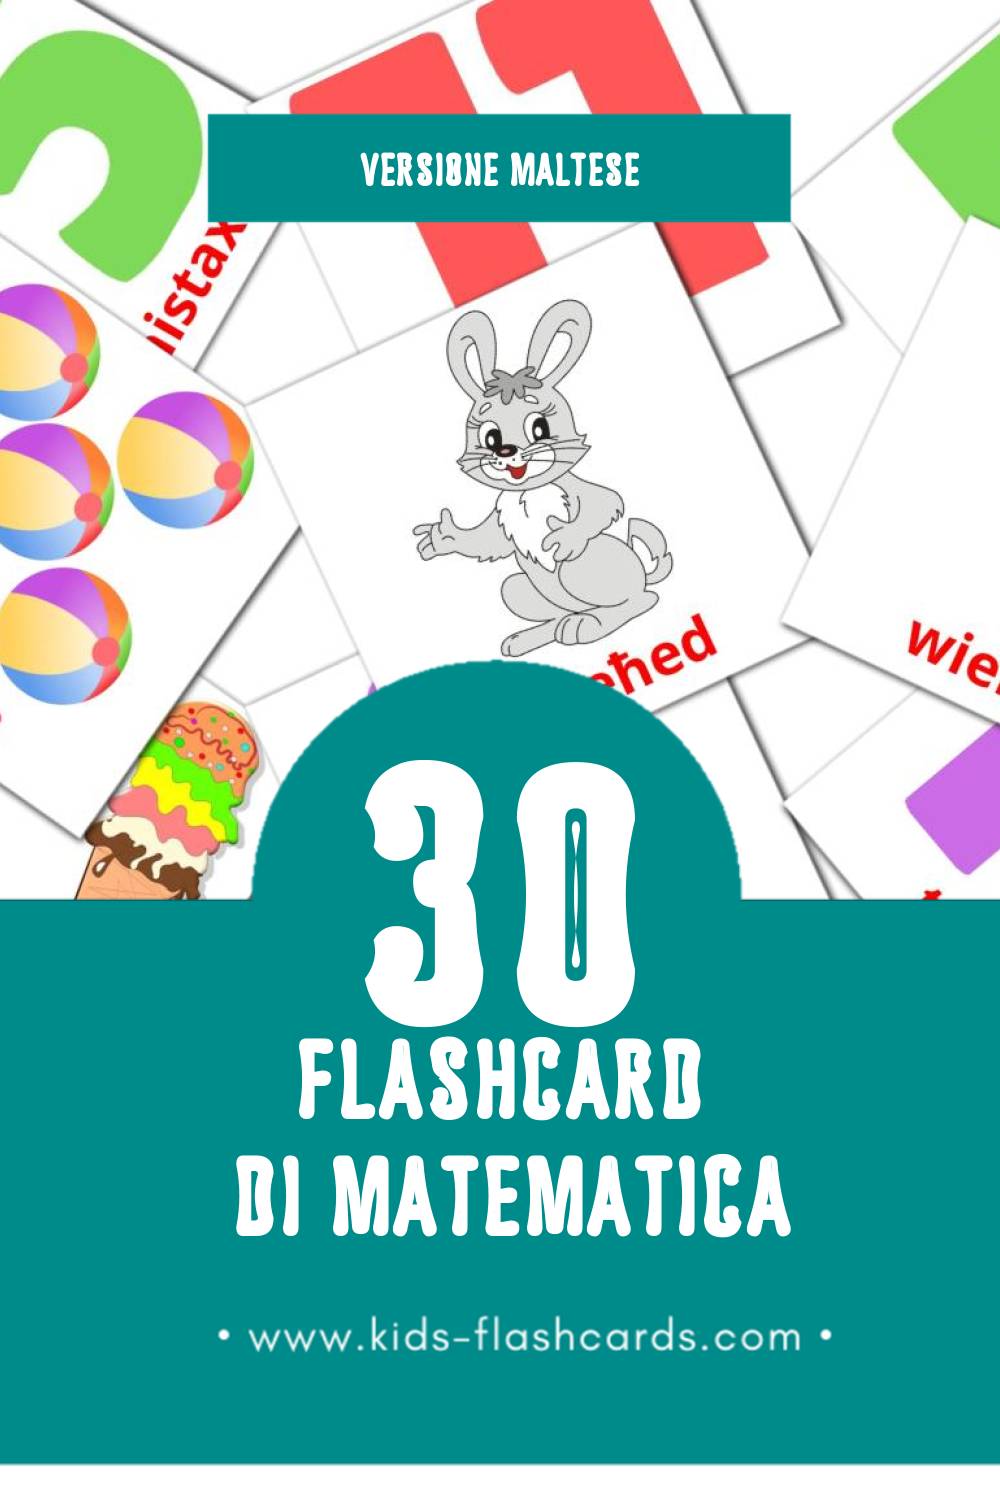 Schede visive sugli Matematika per bambini (30 schede in Maltese)